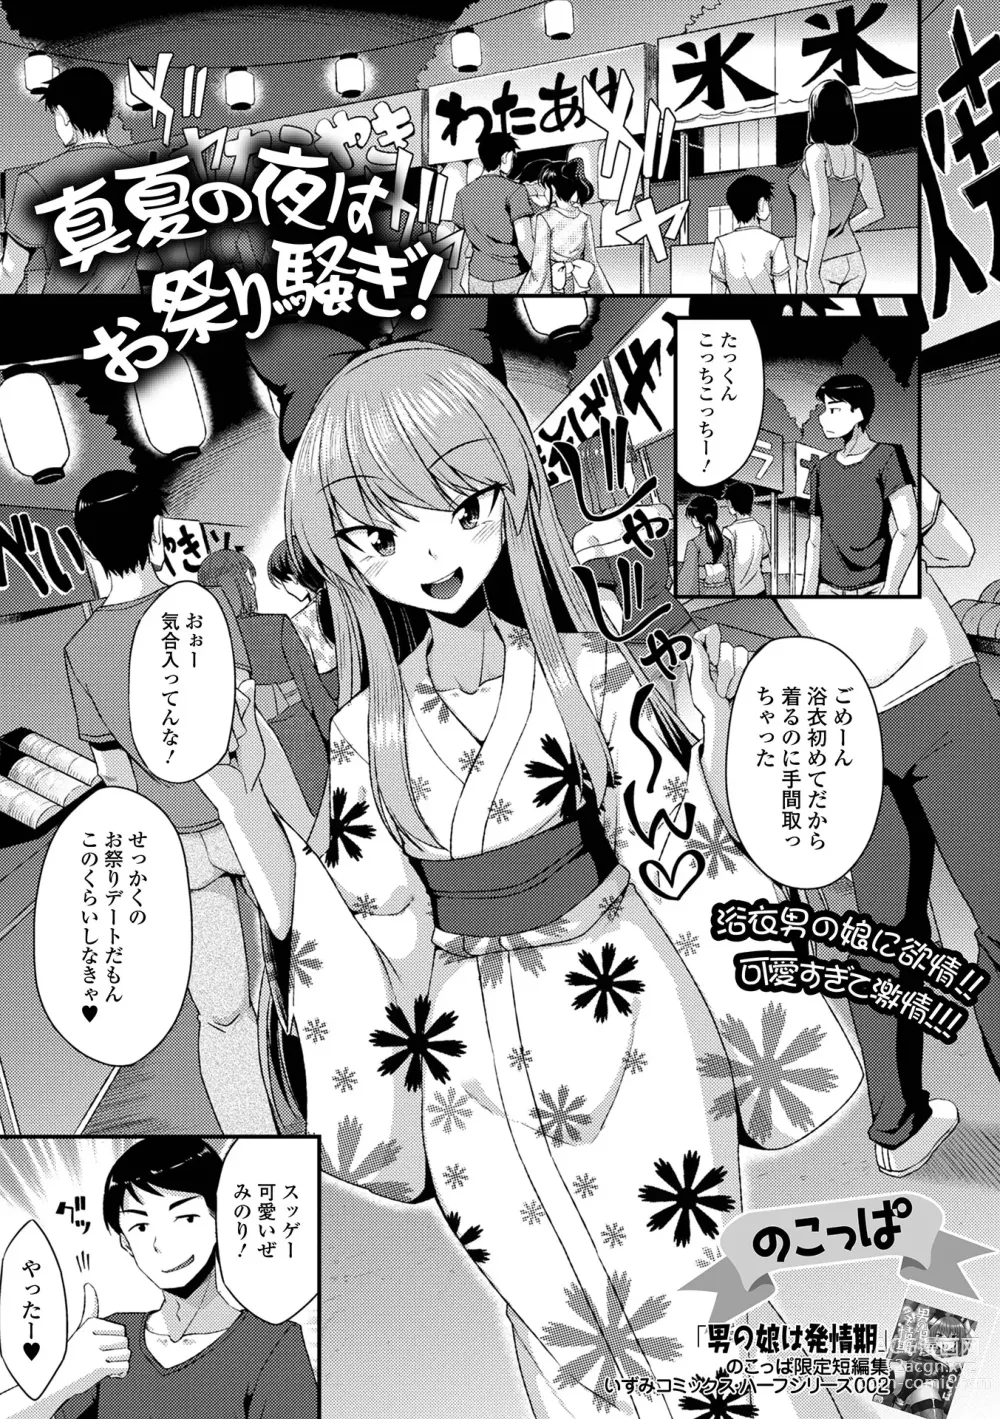 Page 3 of manga Gekkan Web Otoko no Ko-llection! S Vol. 88